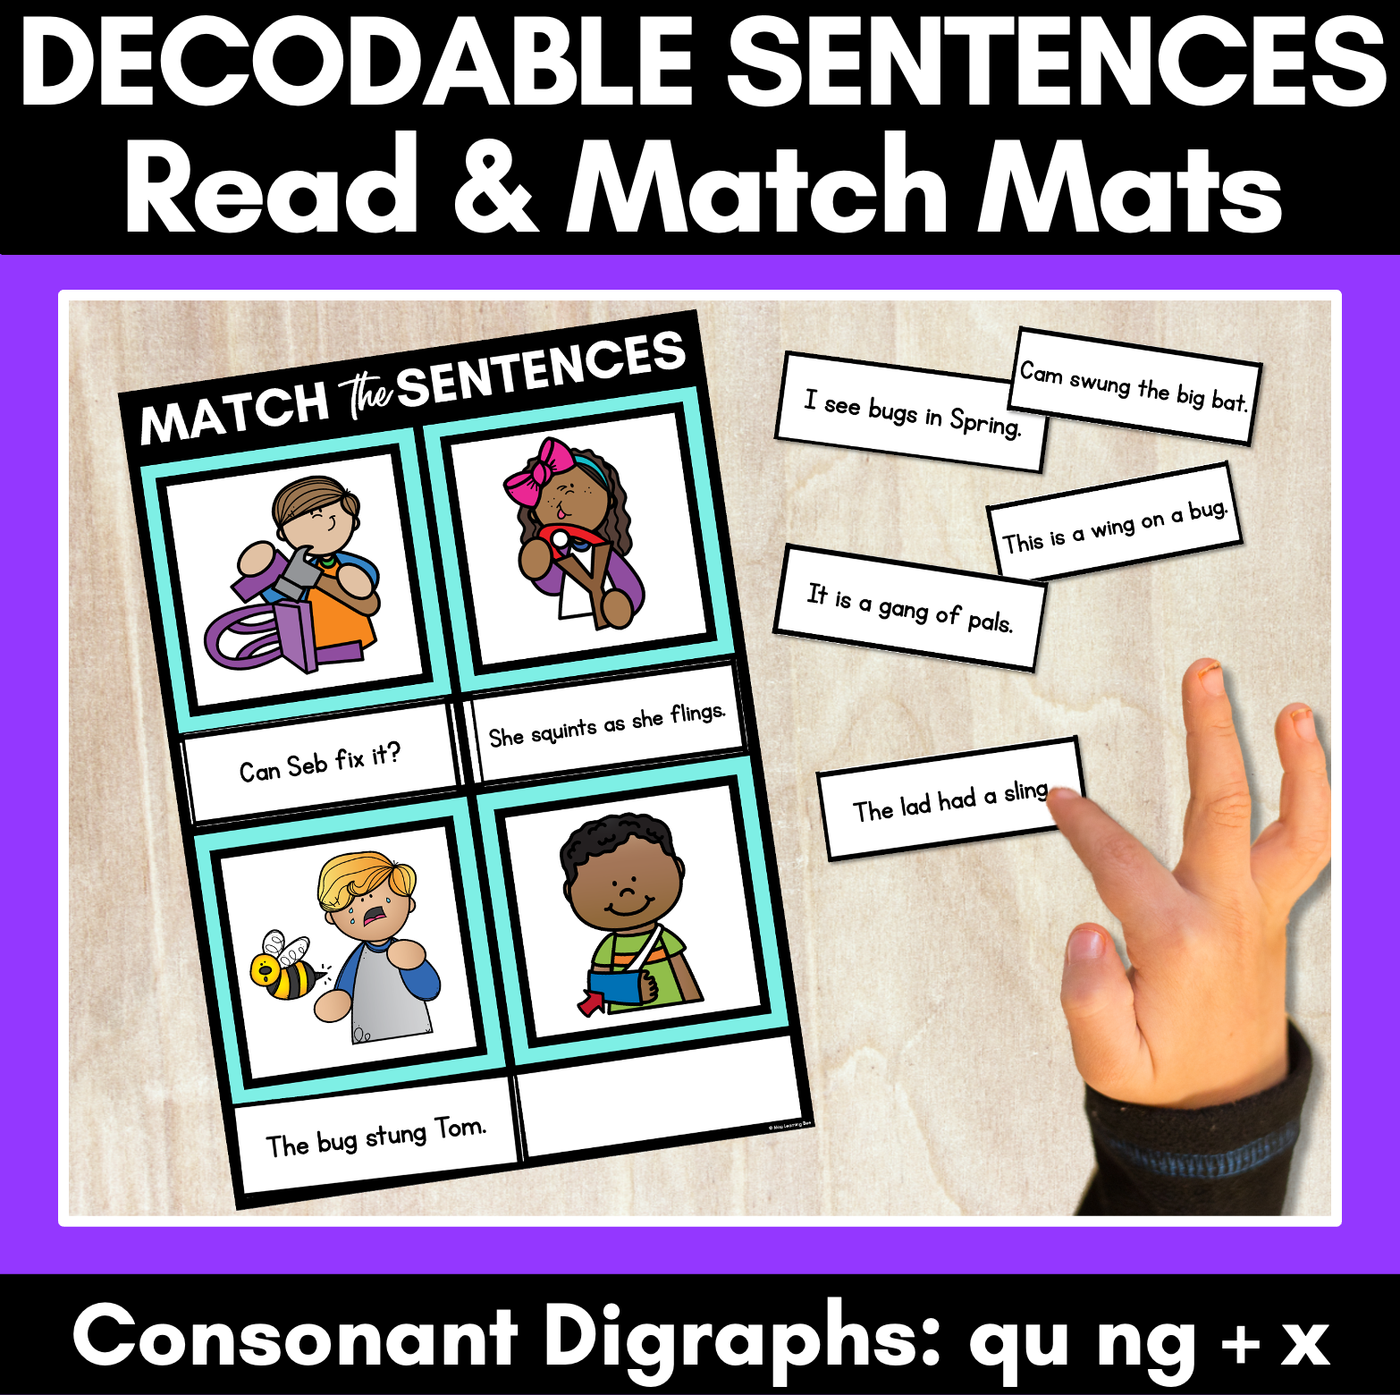 QU NG X Decodable Sentences Mats - Read & Match